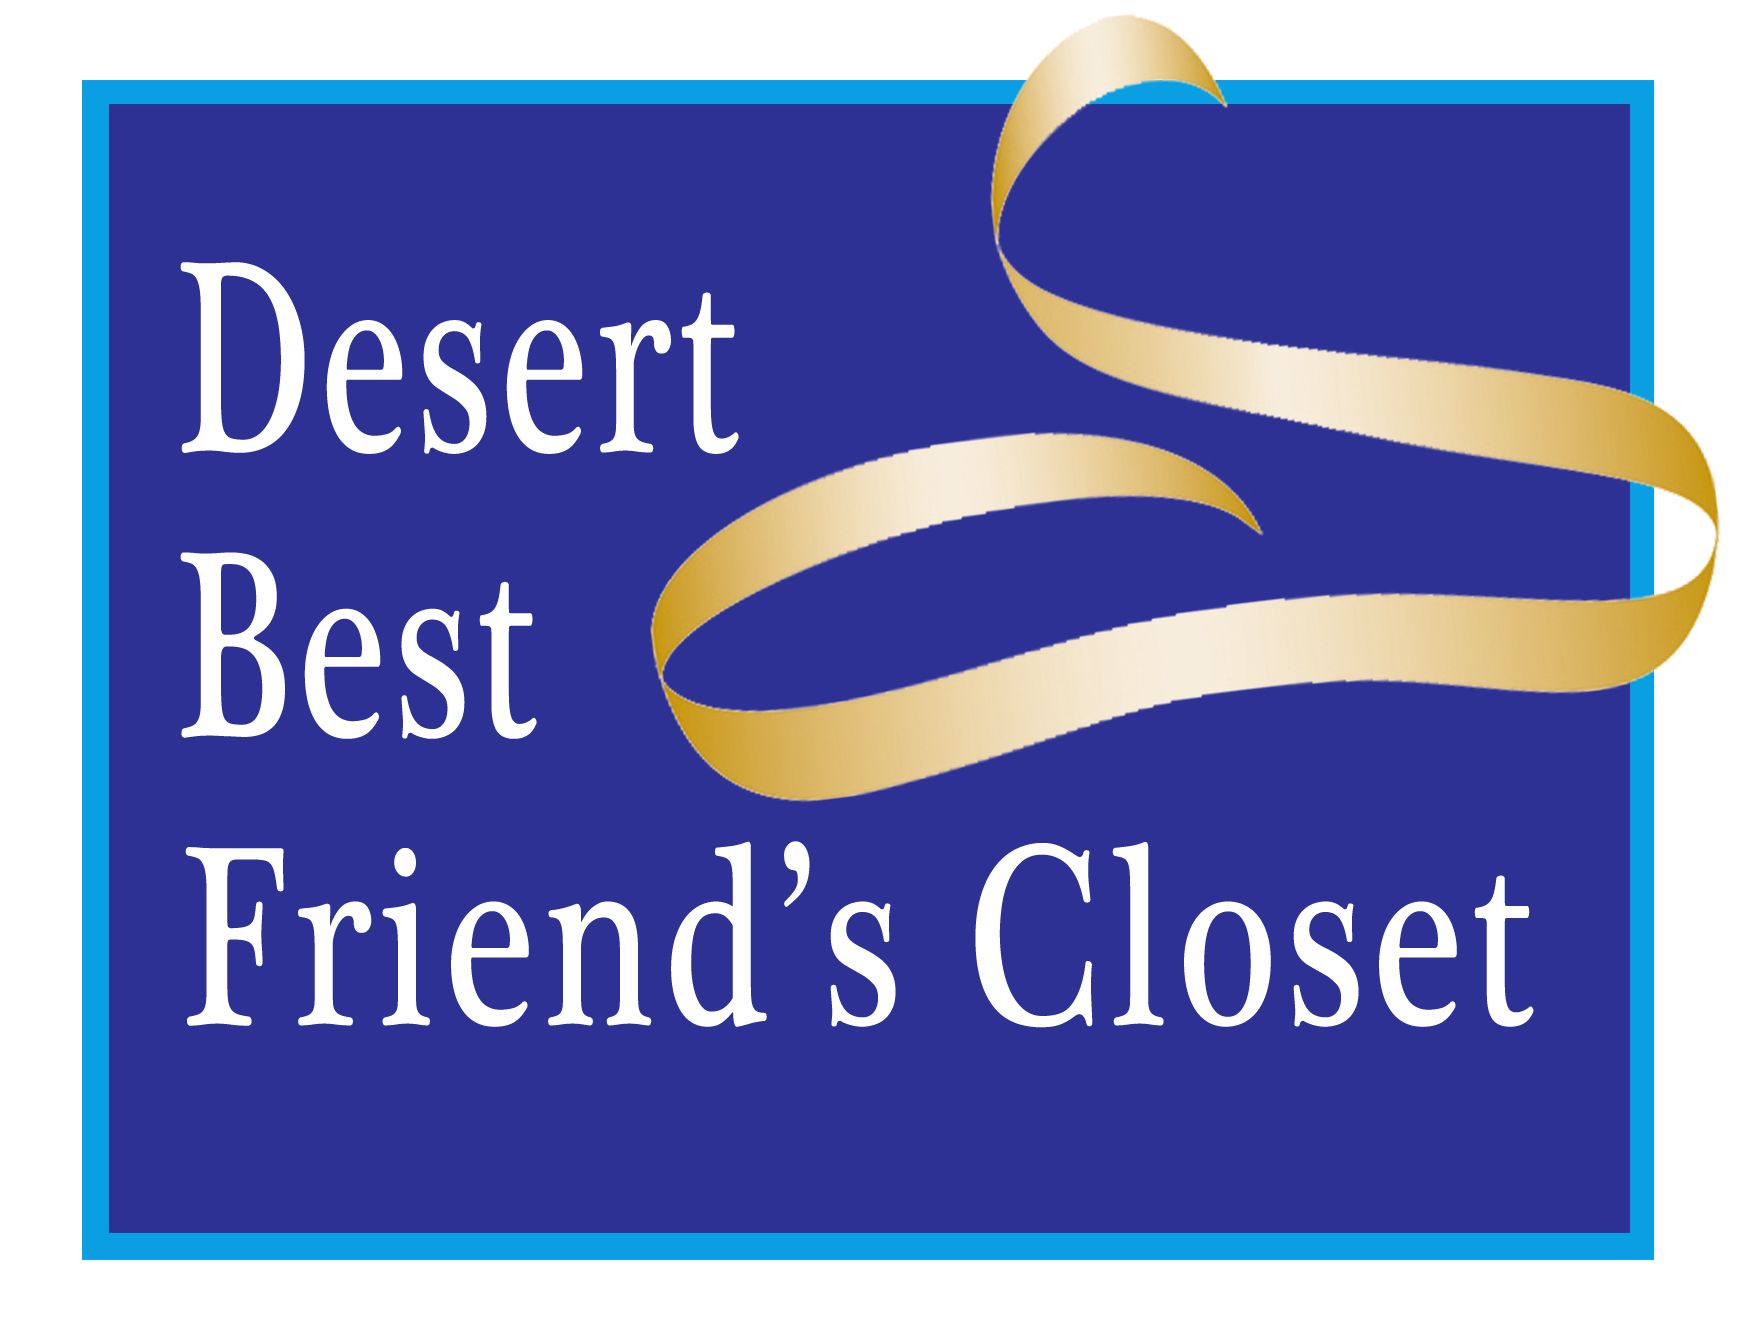 Desert Best Friend’s Closet